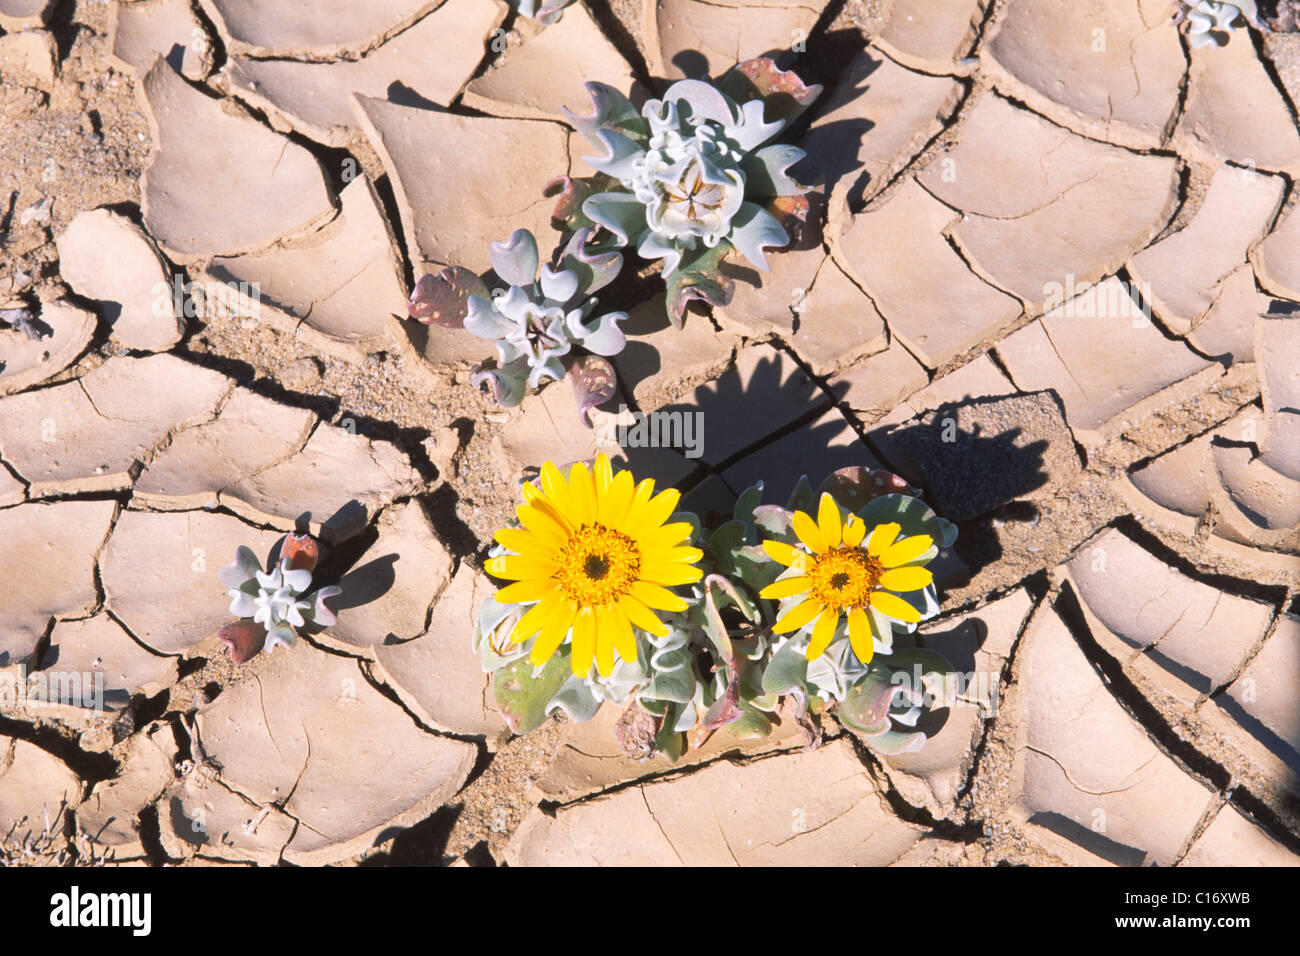 Blooming flores amarillas en el suelo del desierto dessicated, Namibia, África Foto de stock